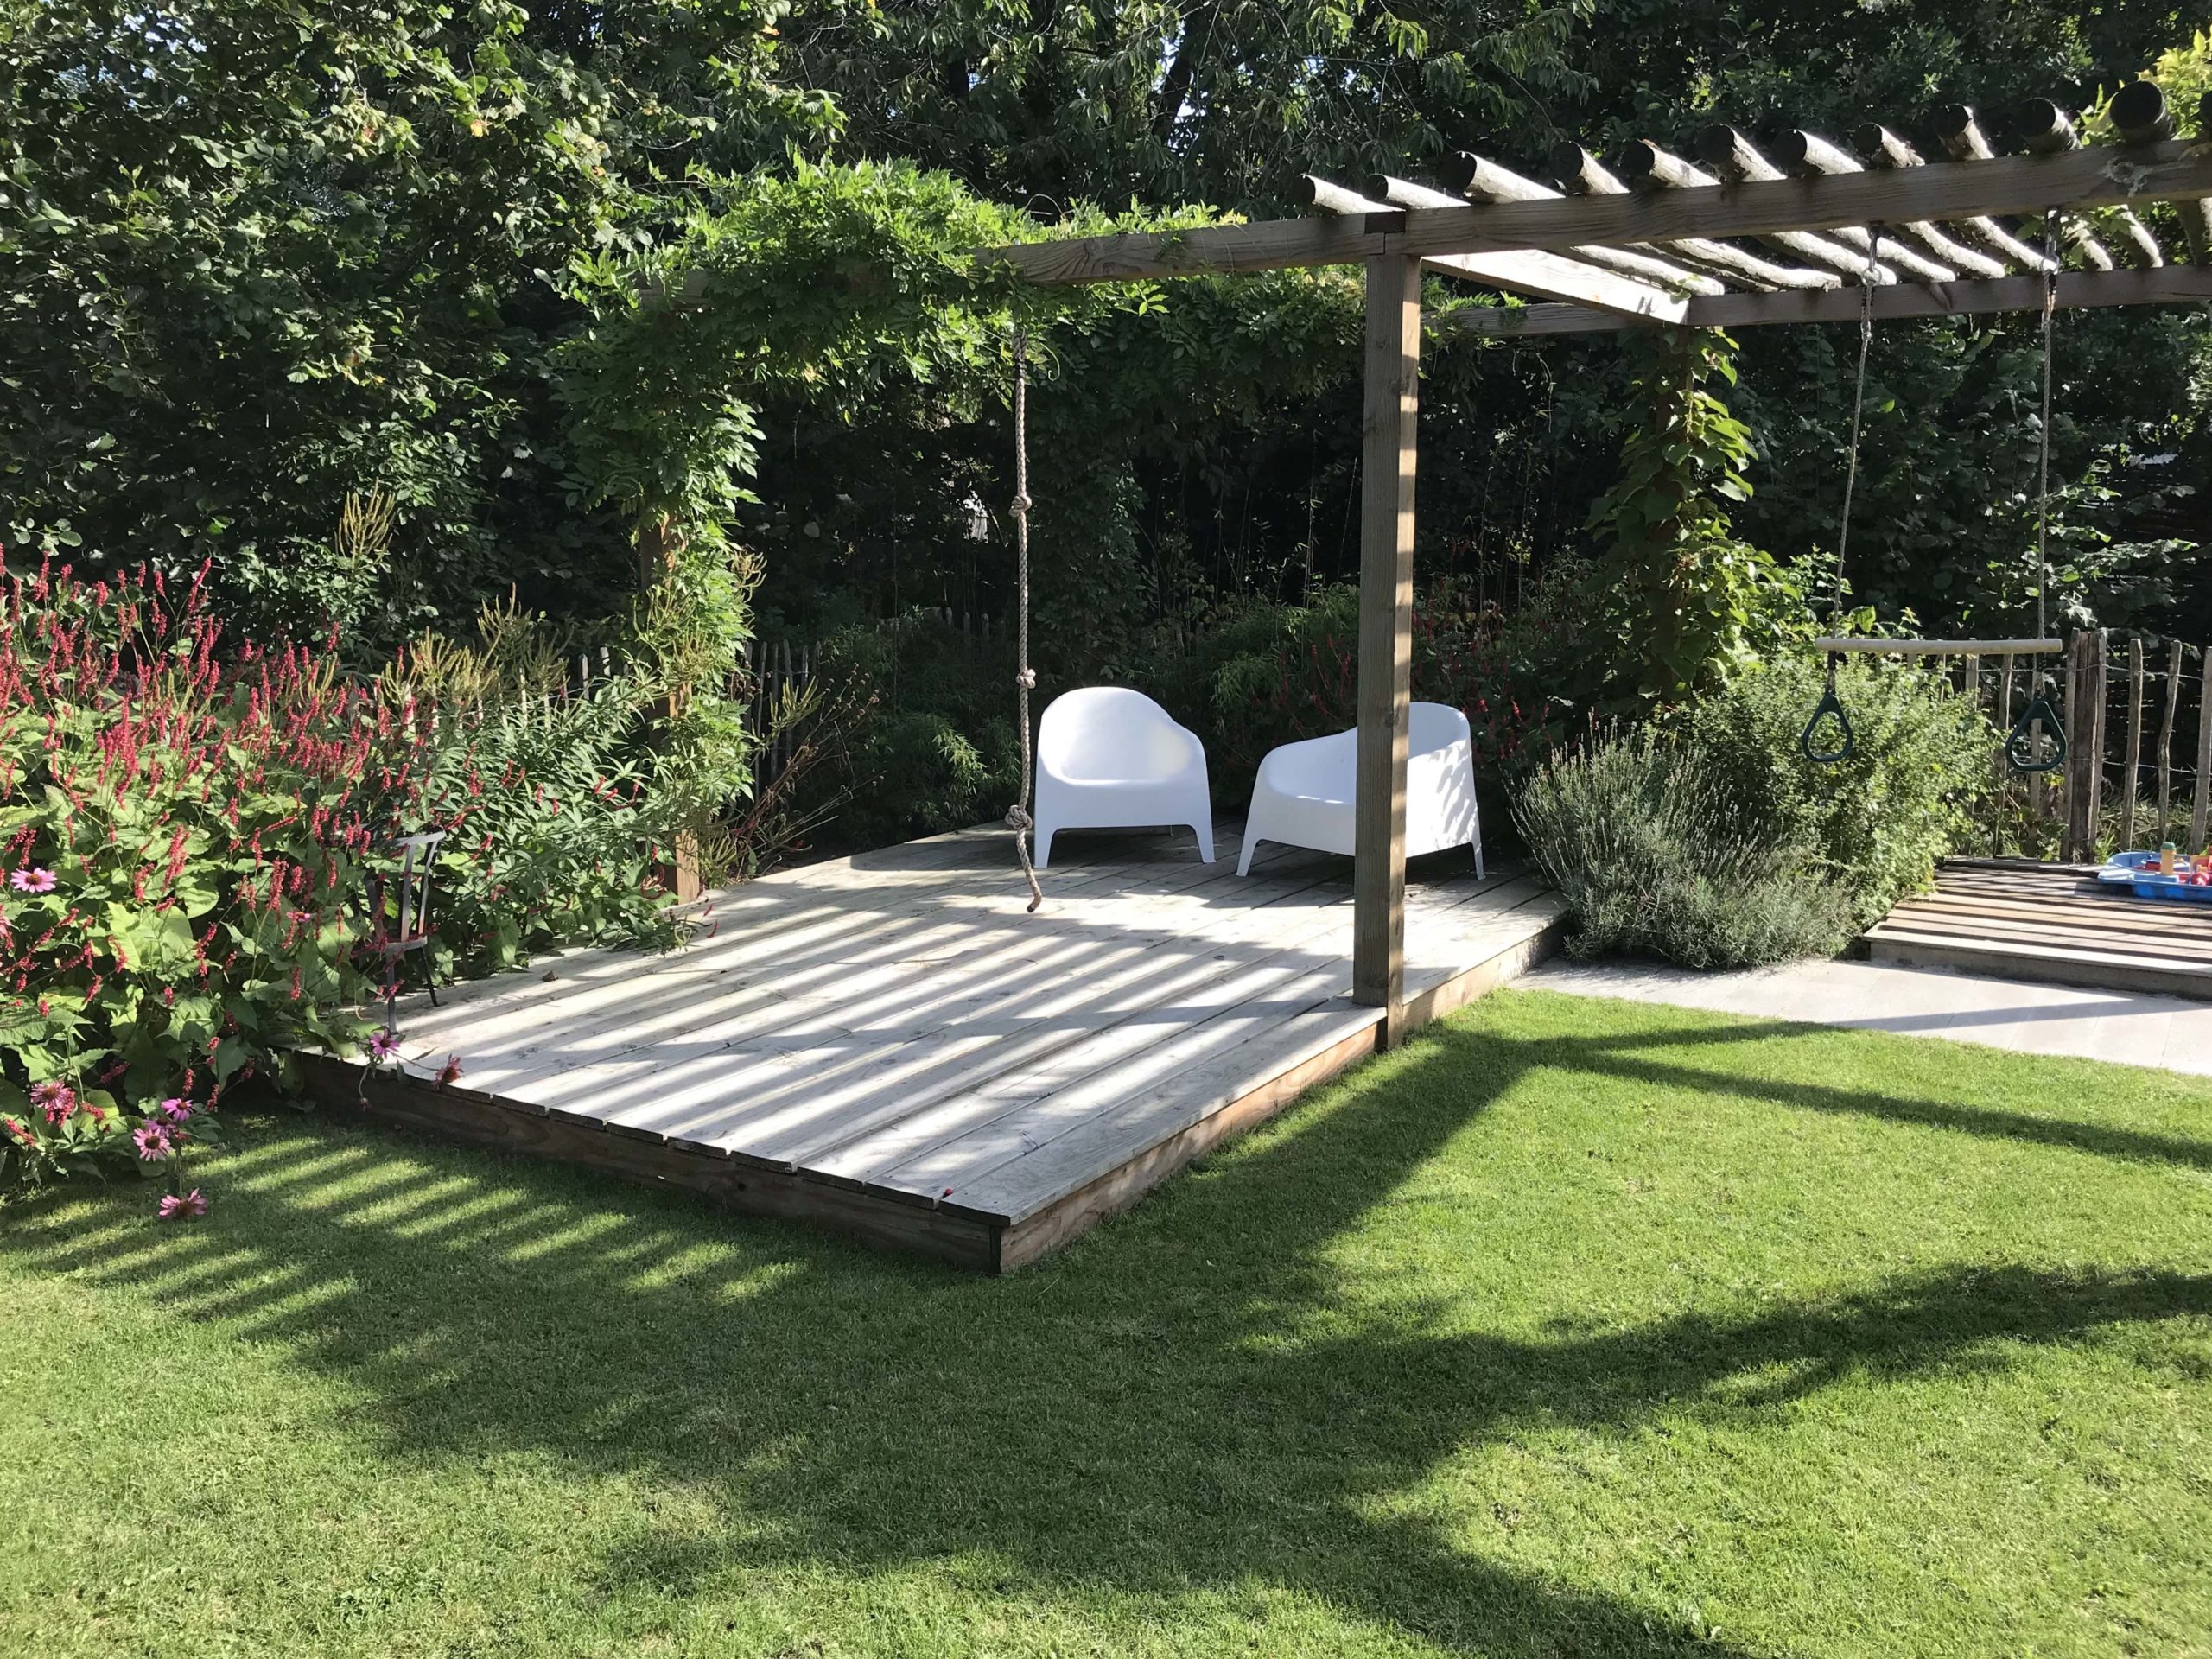 duurzaam vlonderterras Douglas-Lariks hout multifunctionele pergola nieuwbouwtuin aan bosrand makkelijke zonnige achtertuin tuinontwerp Tuinen van Thomas Haren Groningen